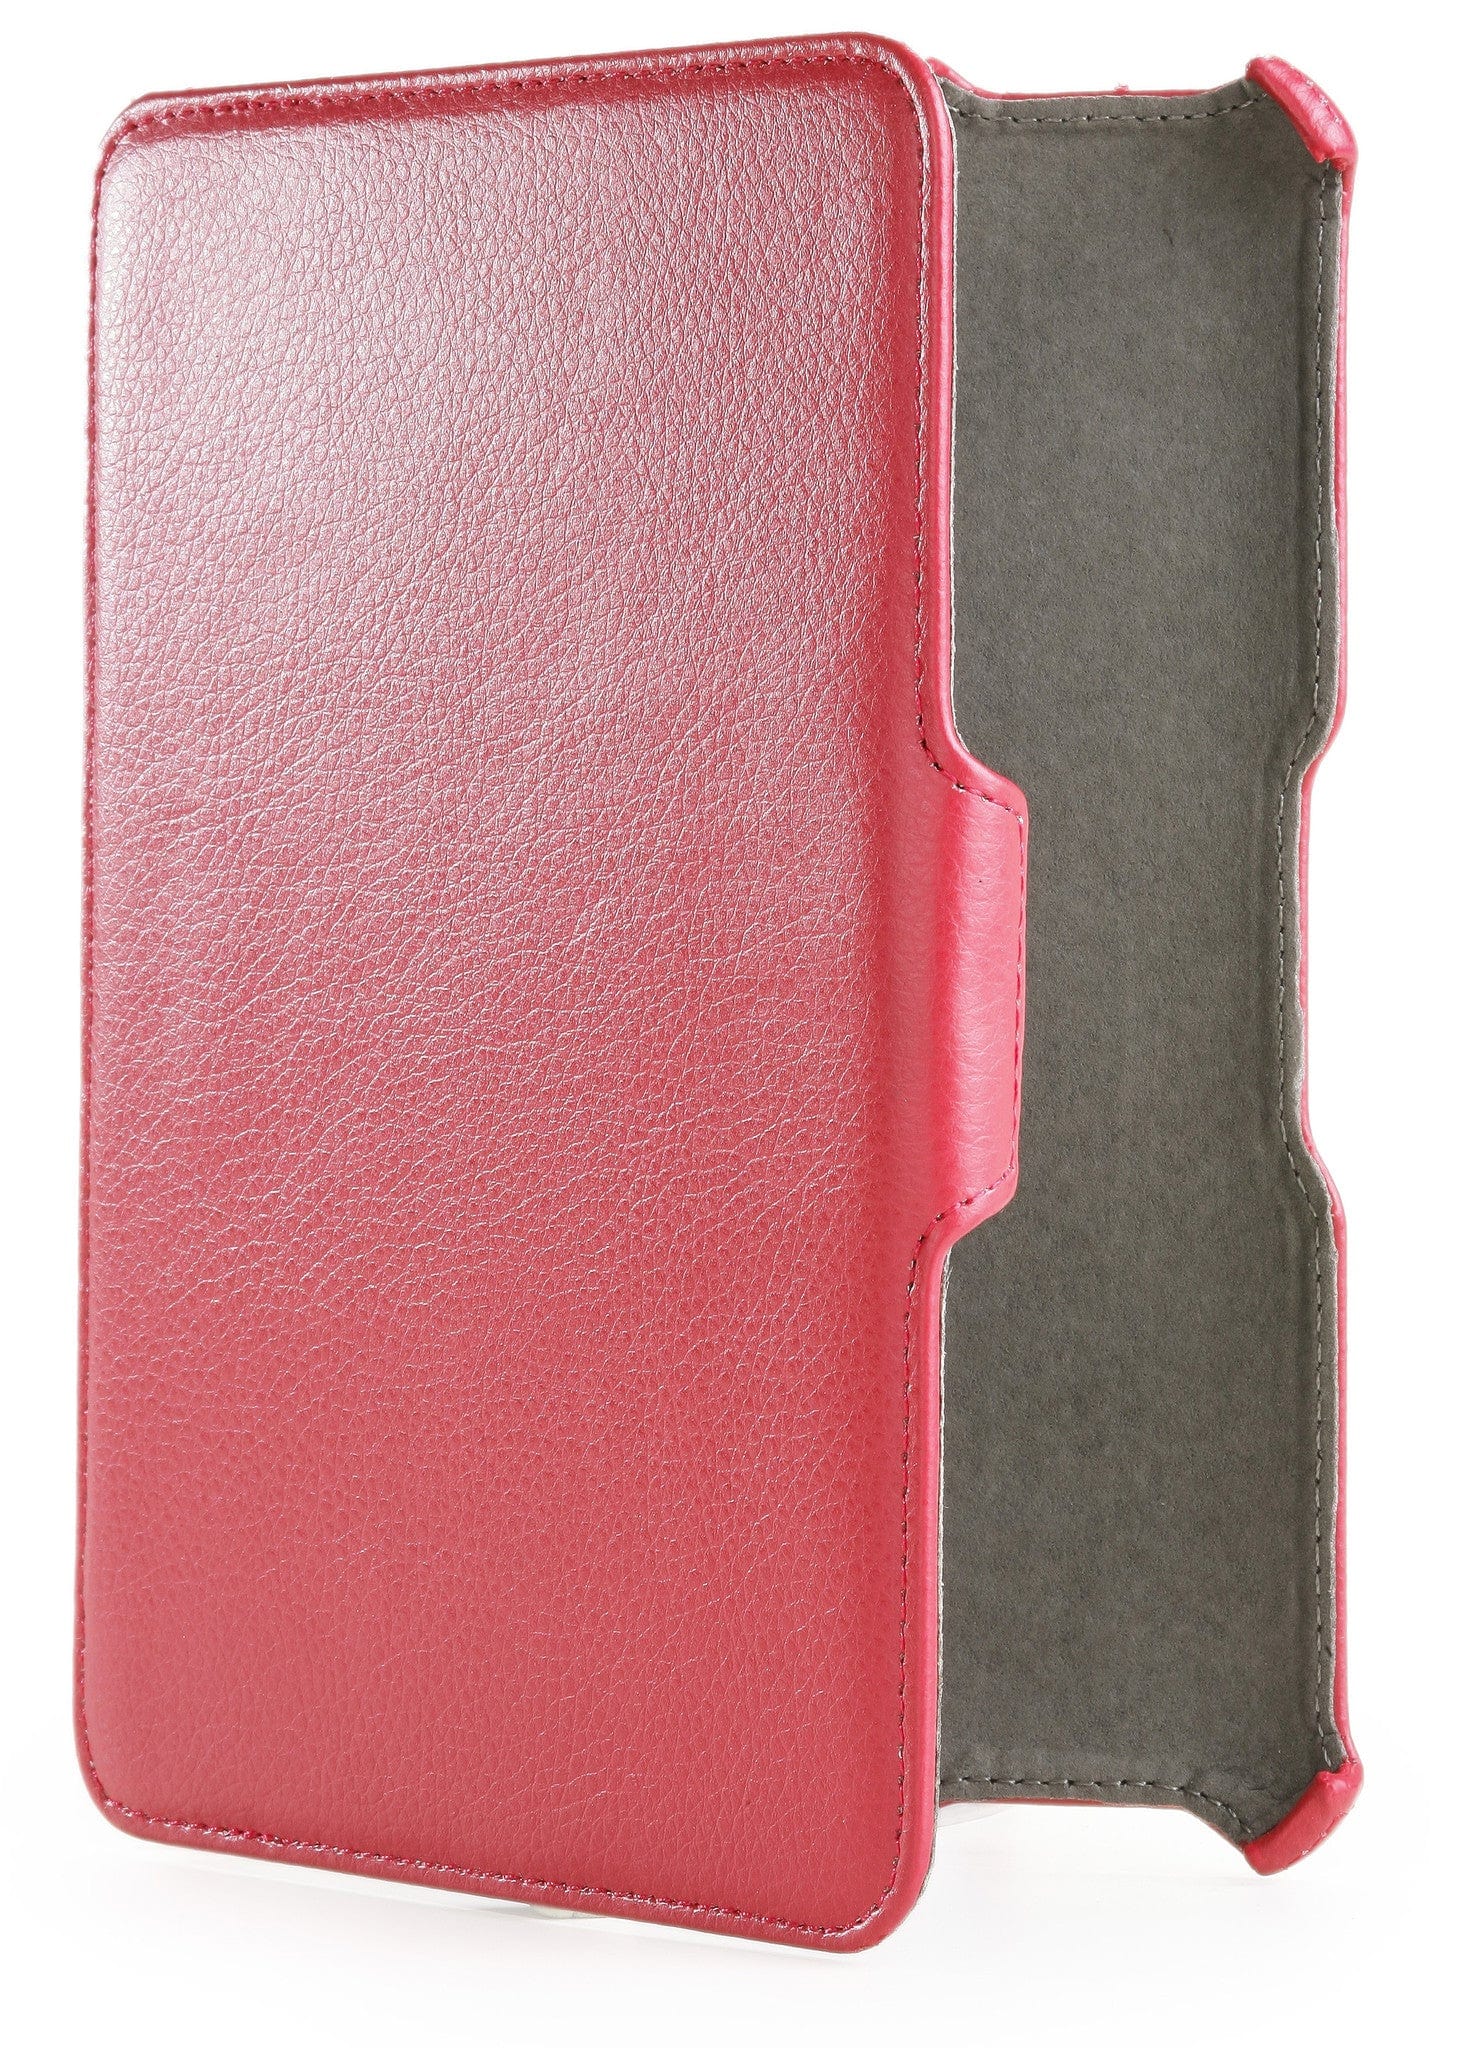 Cooper Prime Tablet Folio Case - 6